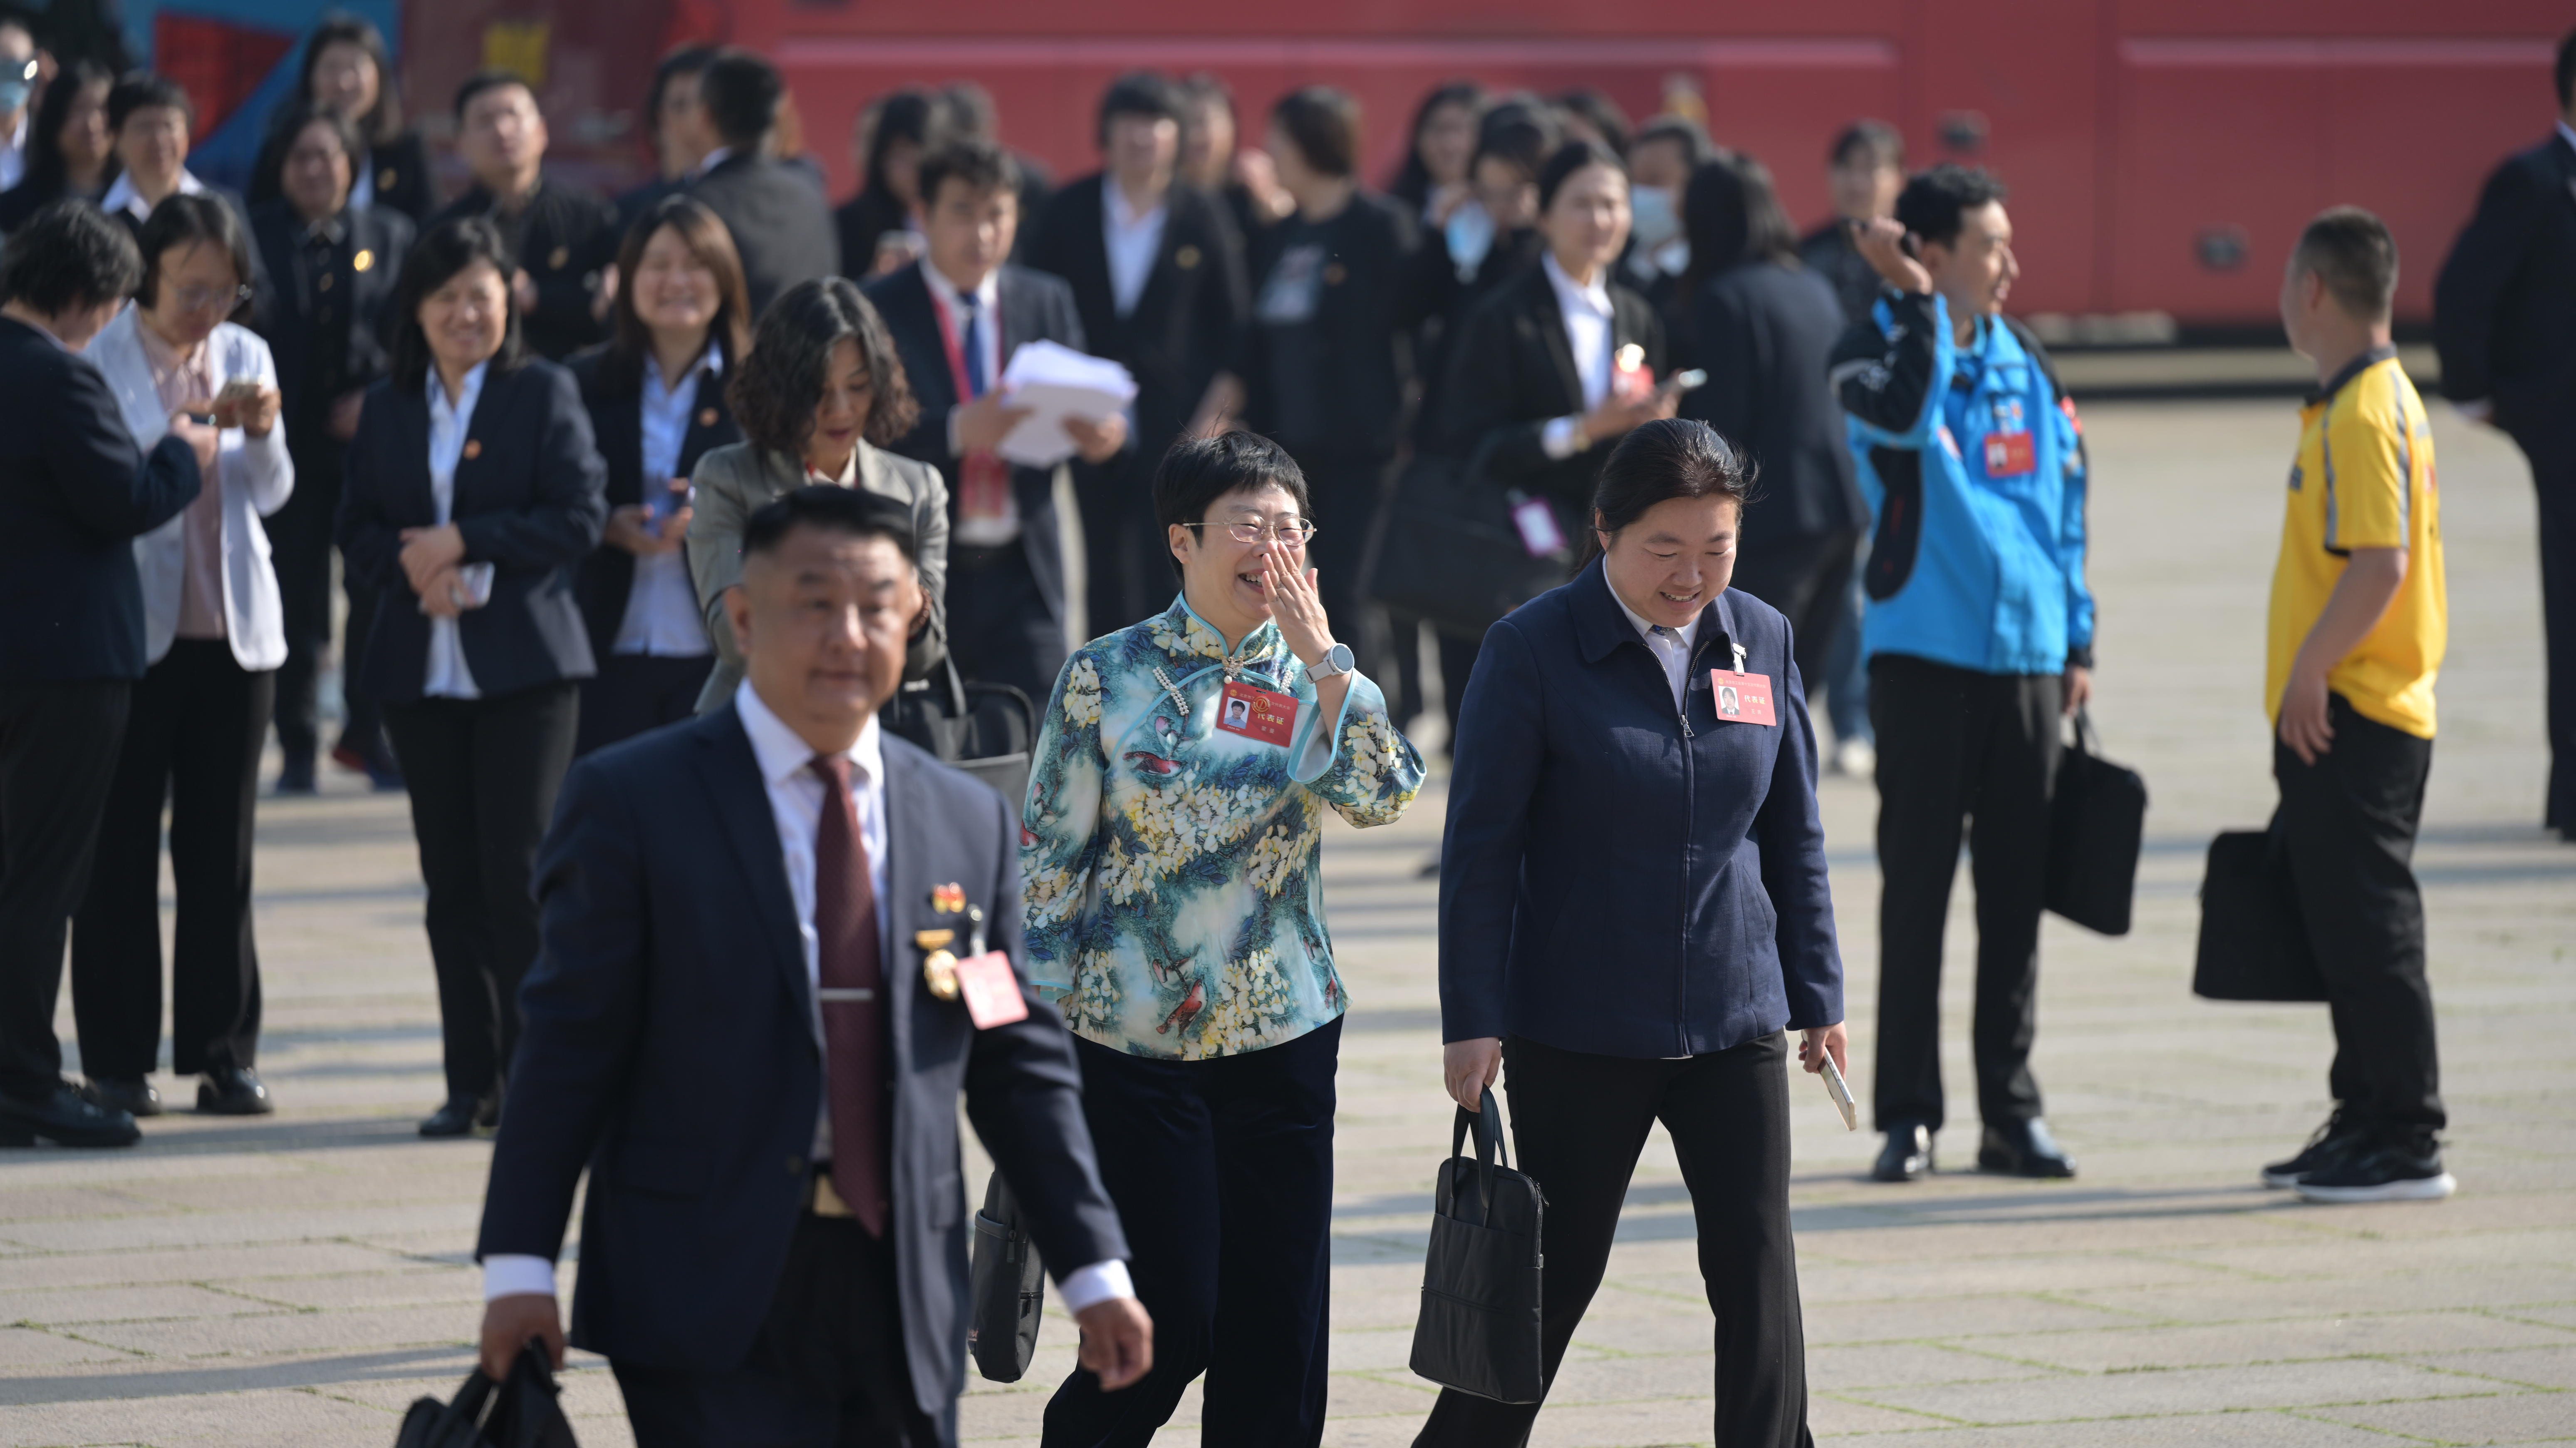 劳动创造幸福 奋斗铸就未来——北京市工会第十五次代表大会胜利开幕